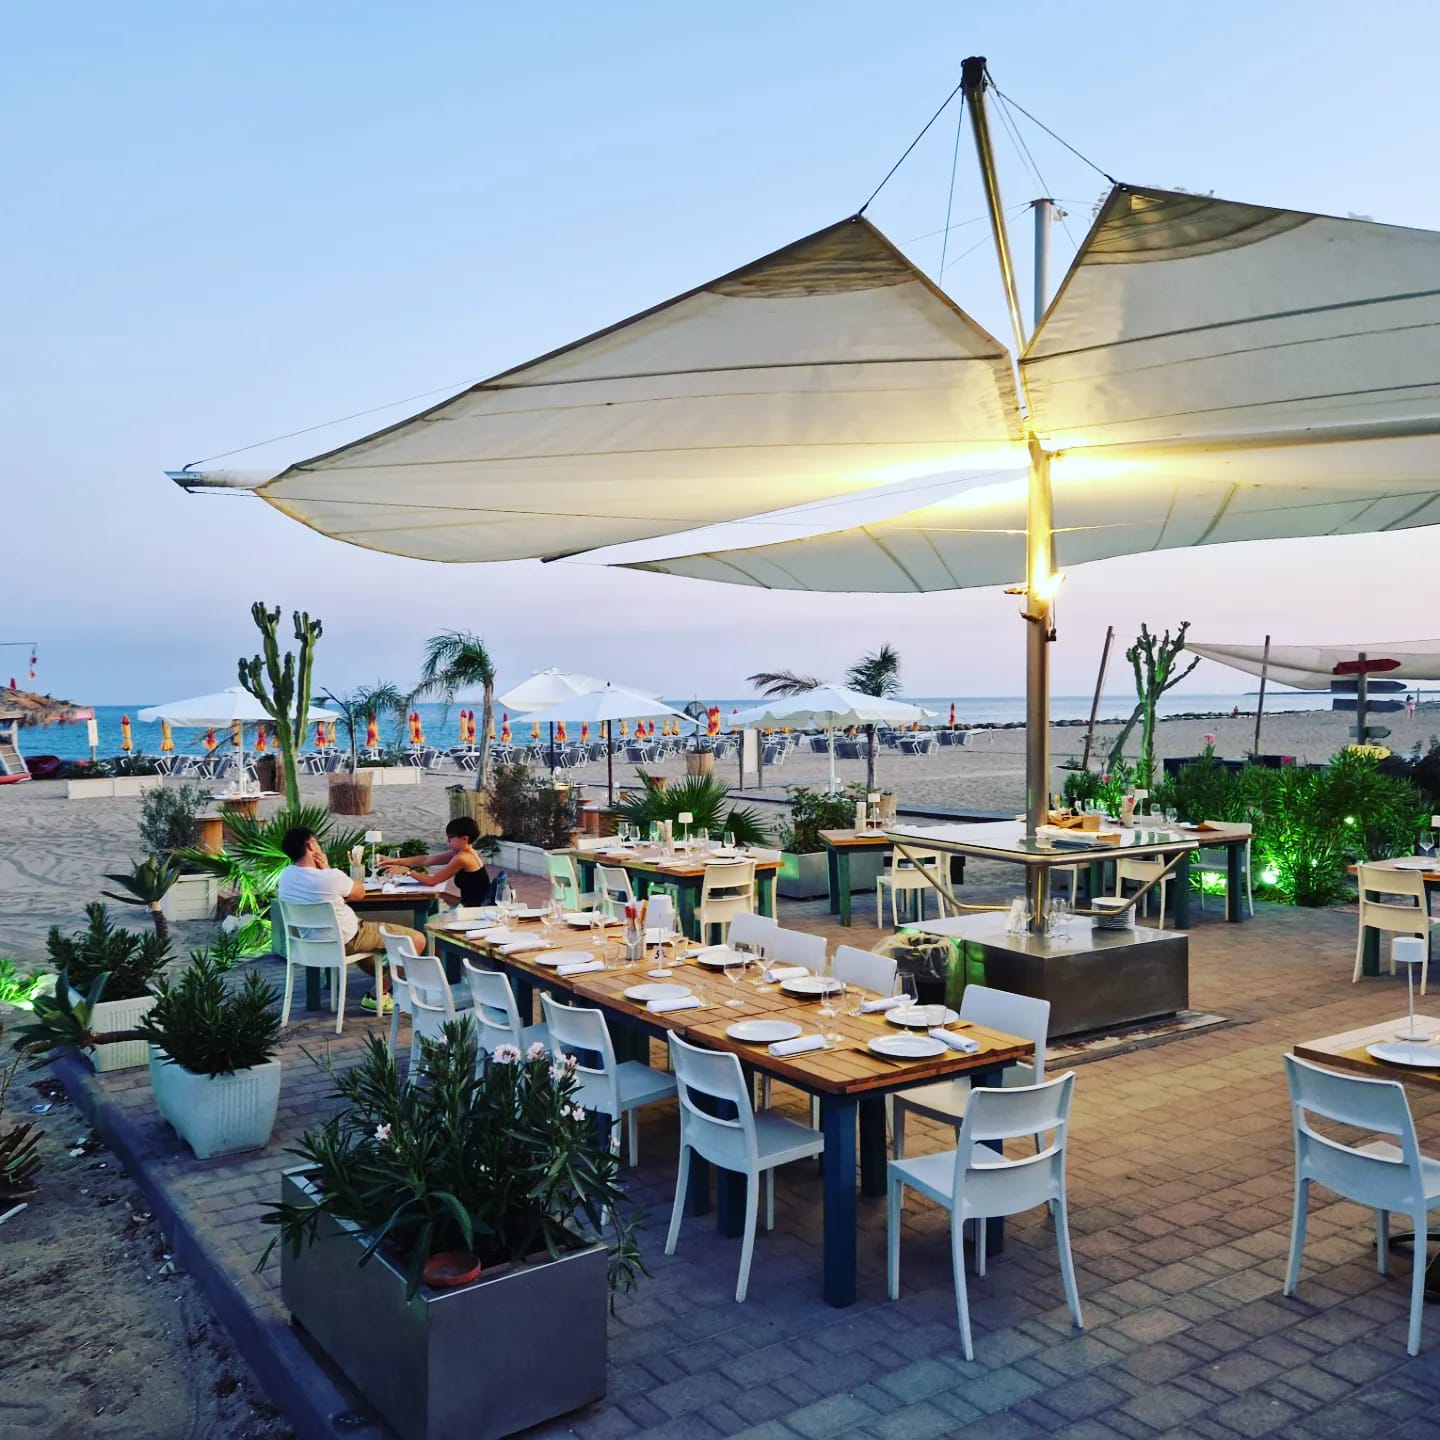 Dove mangiare a Licata, ristoranti consigliati Licata, Oasi Beach - Osteria del Mare, Esterni, Arredamento